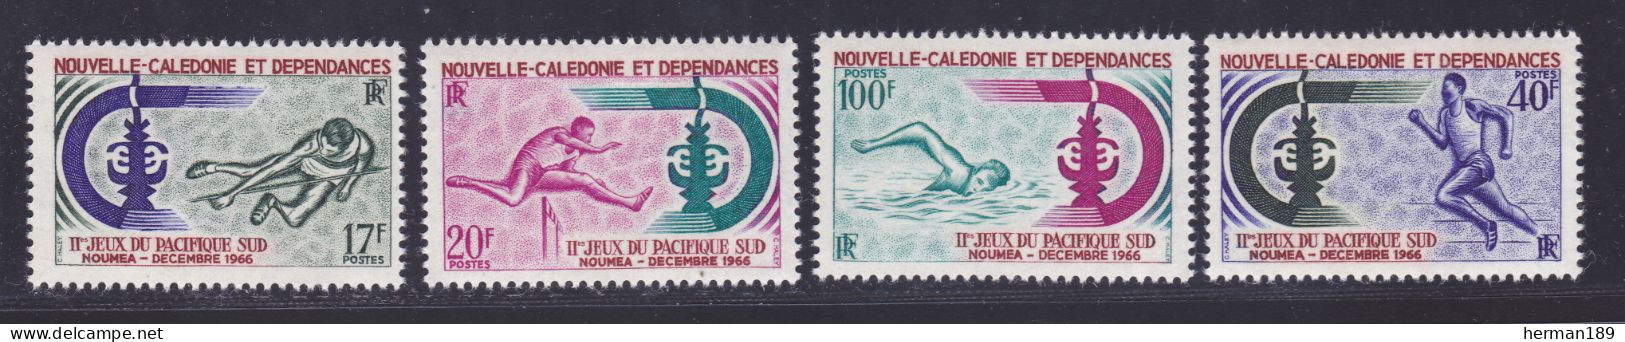 NOUVELLE CALEDONIE N°  332 à 335 ** MNH Neufs Sans Charnière, TB (D7473) Jeux Du Pacifique Sud - 1966 - Ongebruikt